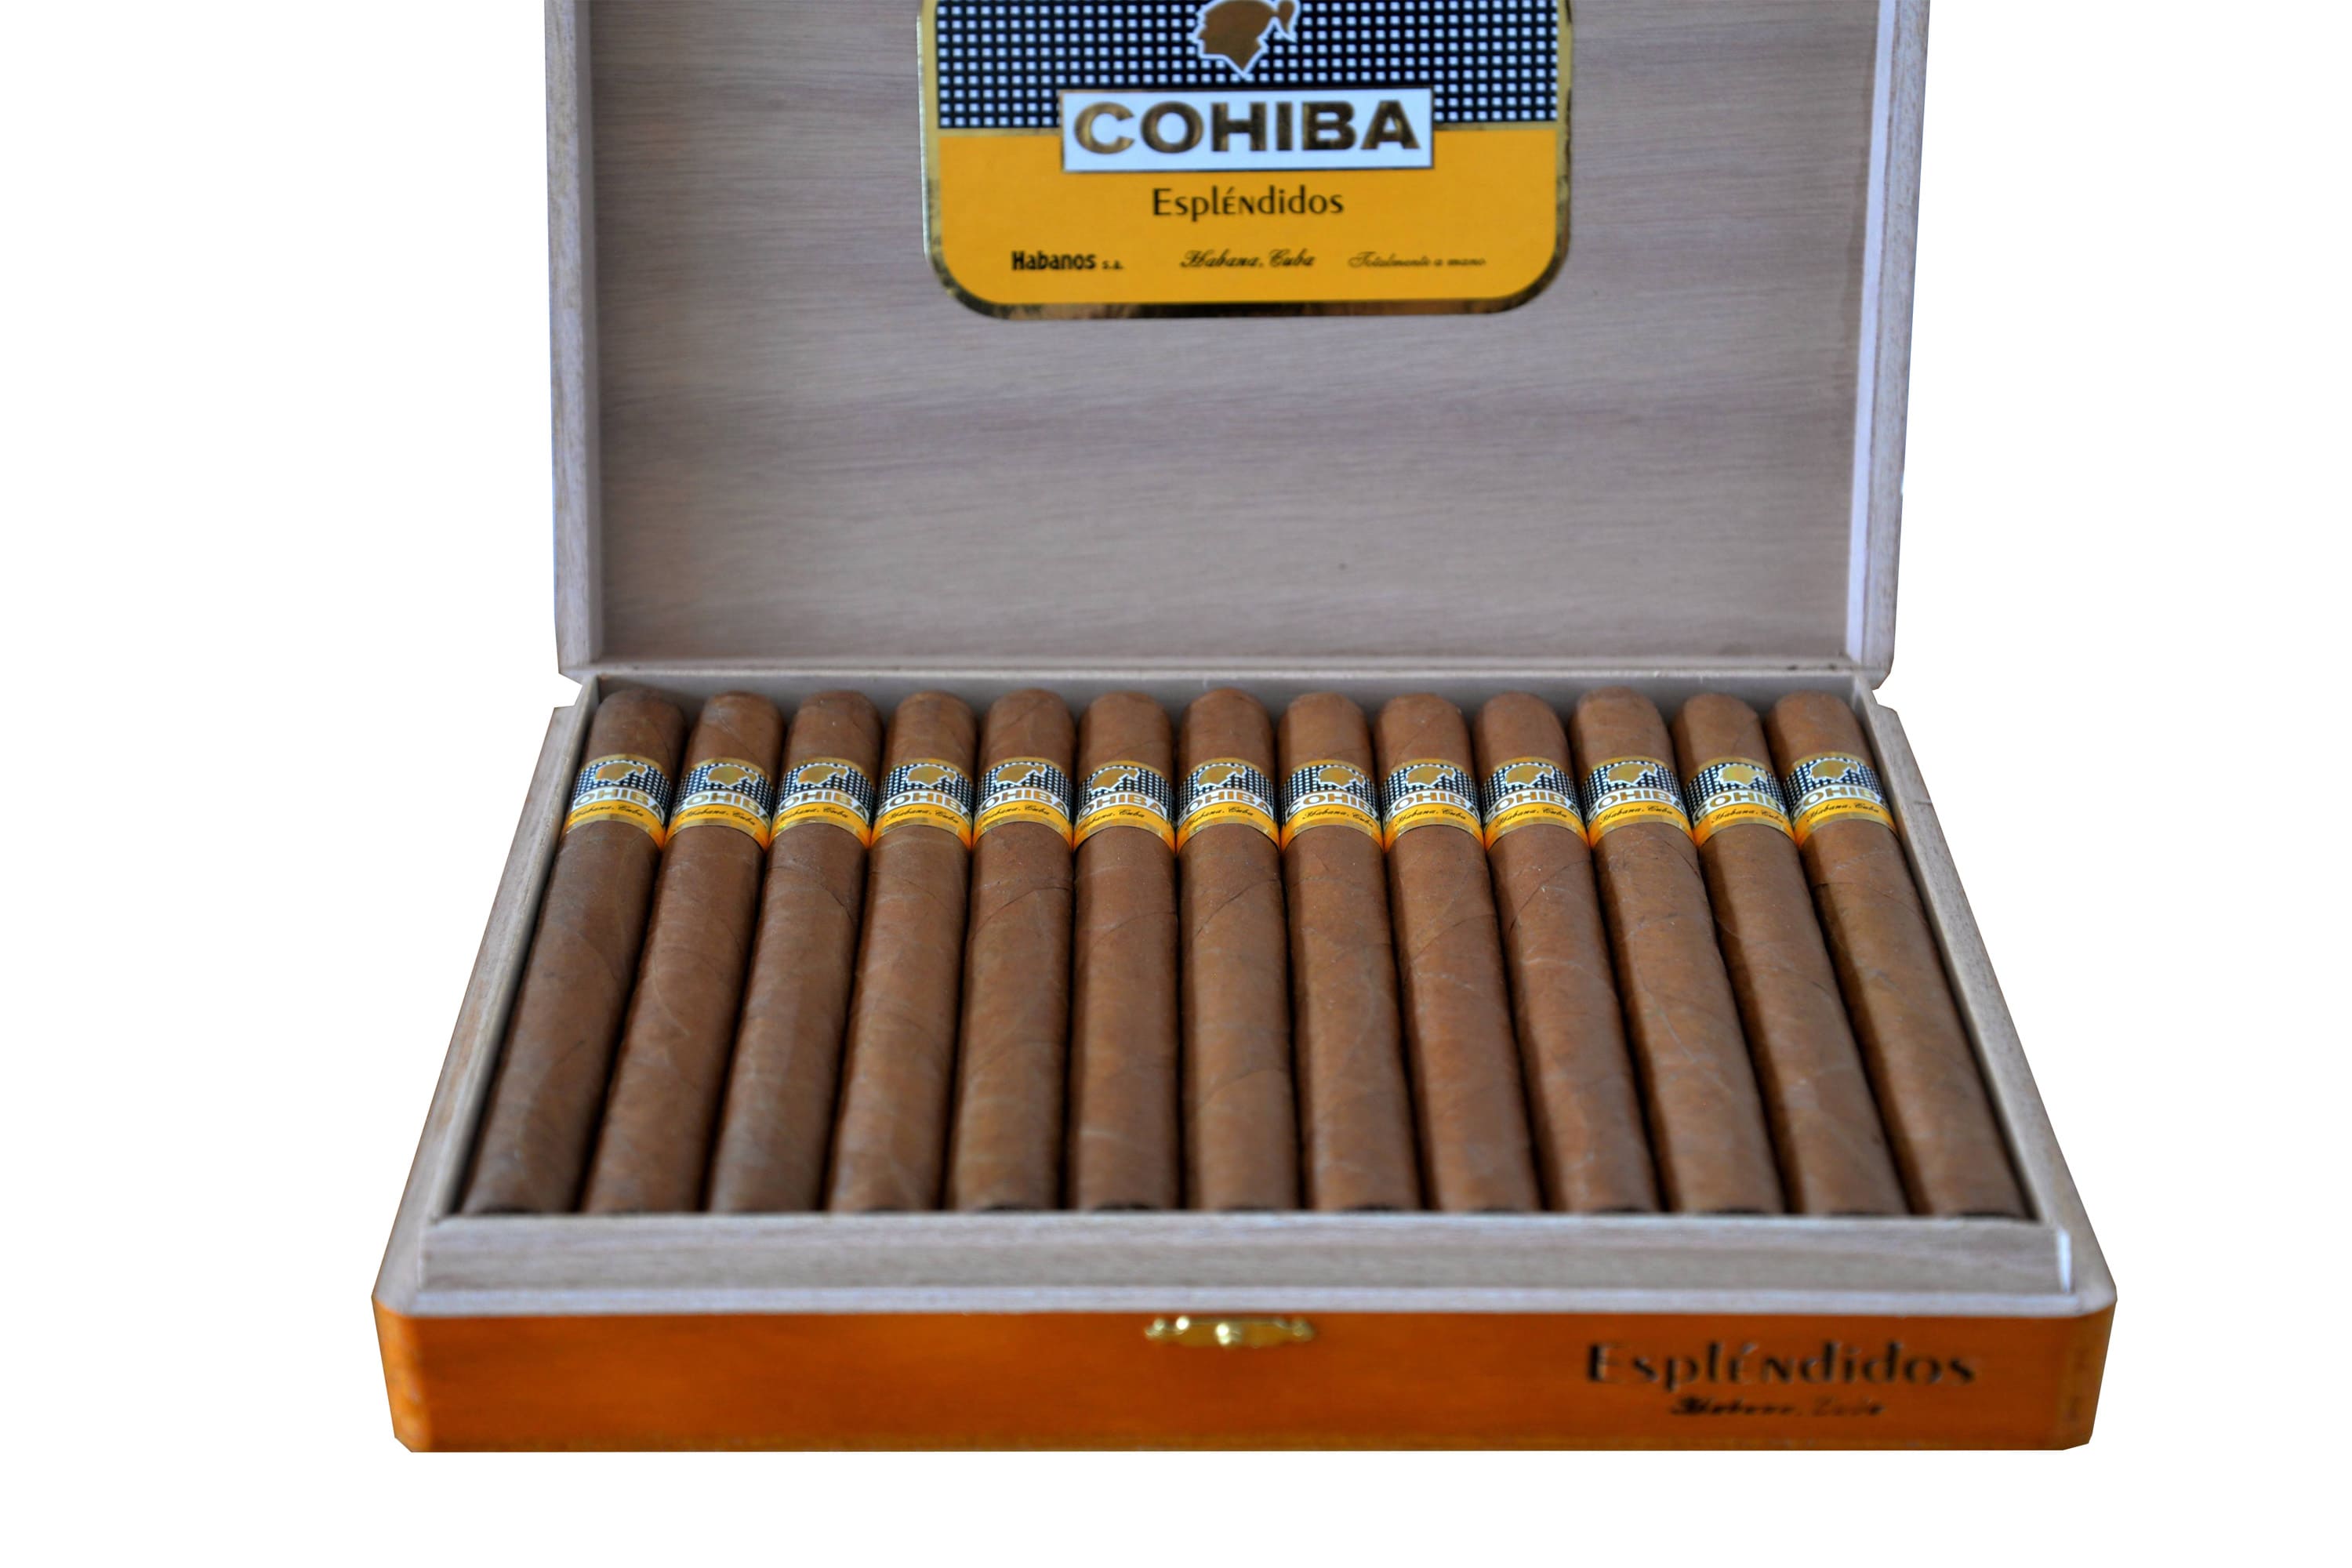 Купить кубинские сигары в интернет. Сигары Cohiba esplendidos. Кубинские сигары Cohiba. Сигары Коиба Пирамидес. Кубинские сигары Cohiba Mini.